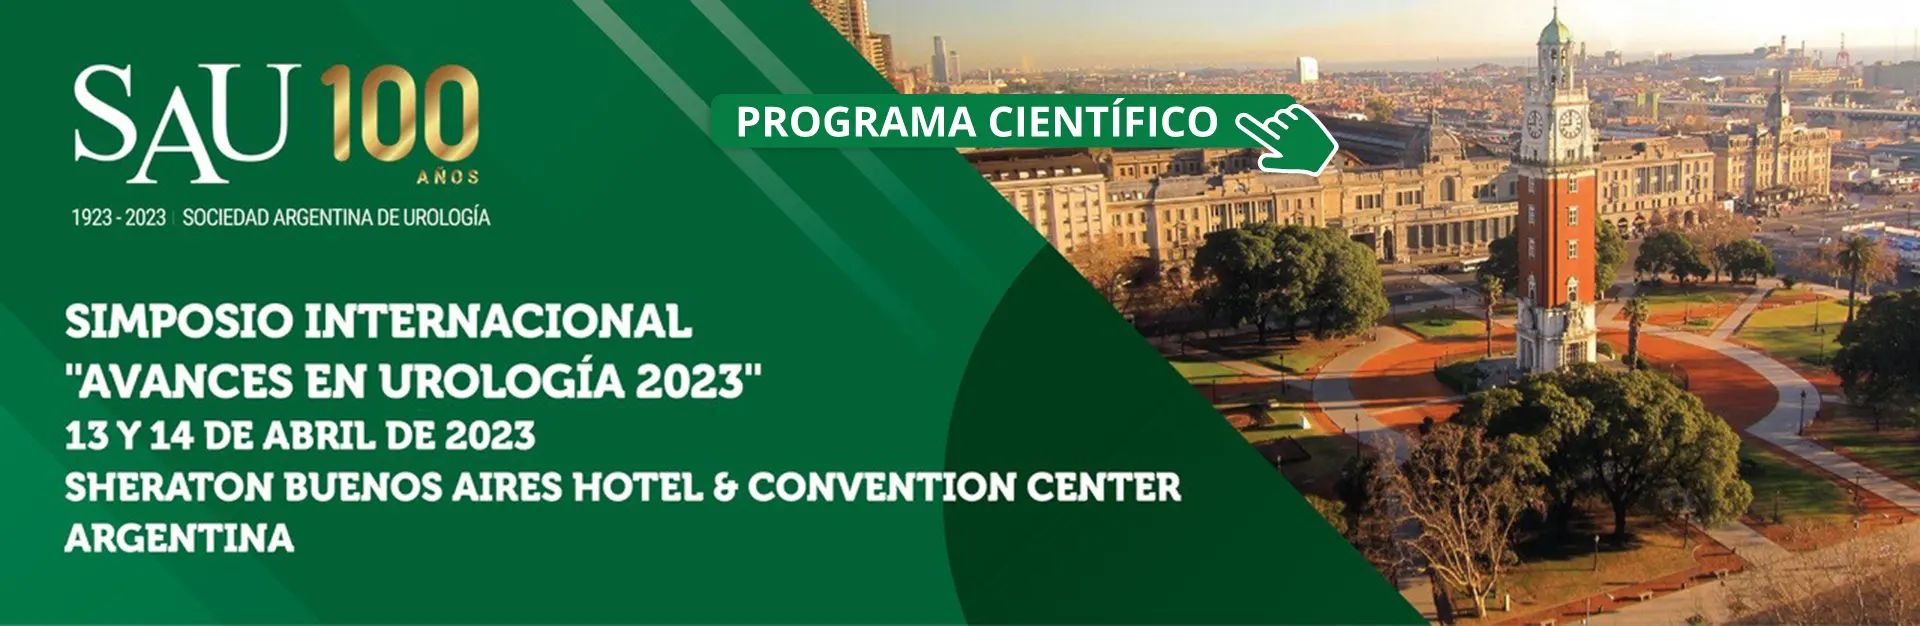 Simposio Internacional "Avances en Urología 2023". 13 y 14 de abril de 2023. Buenos Aires Sheraton Hotel & Convention Center.